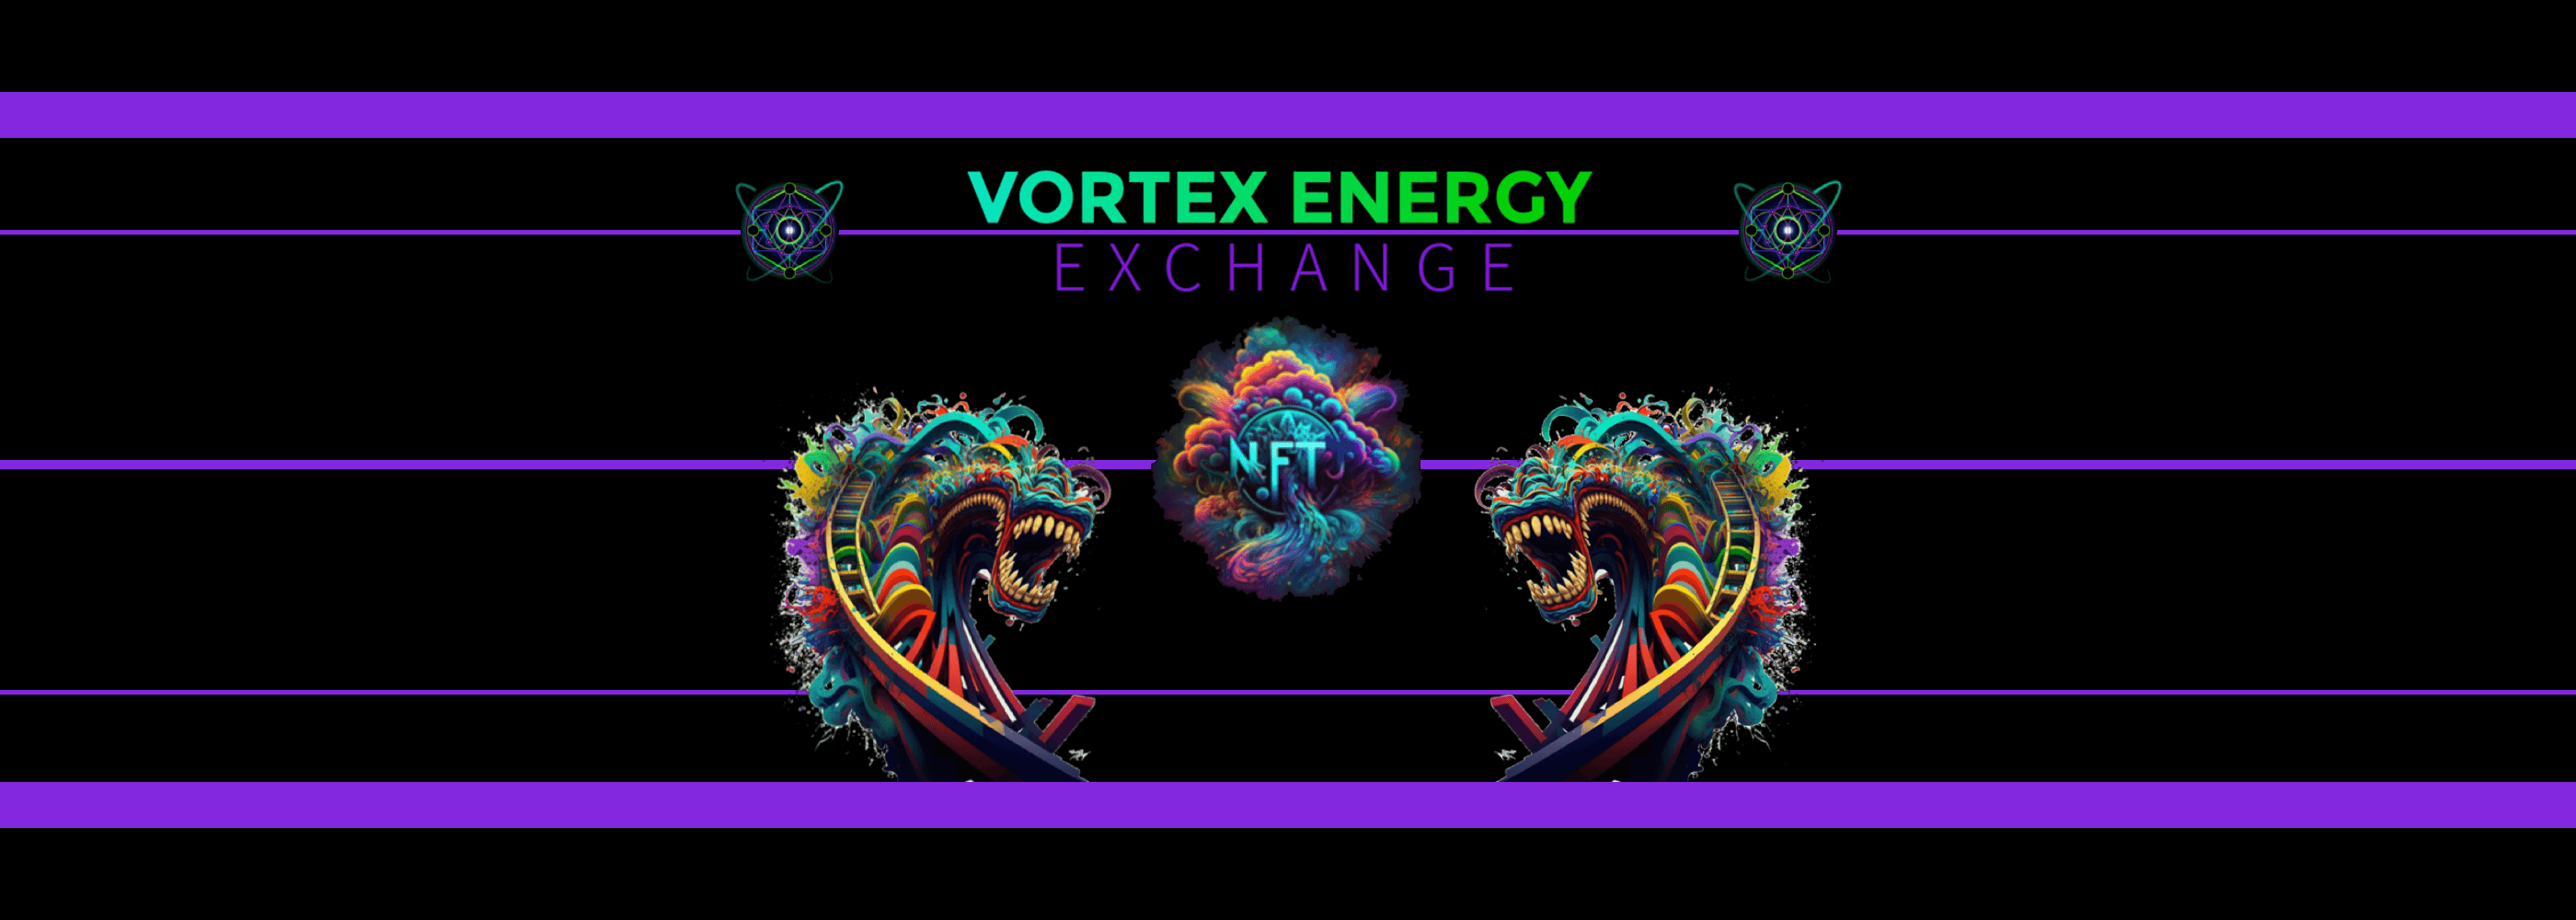 Vortex_Energy_Exchange バナー